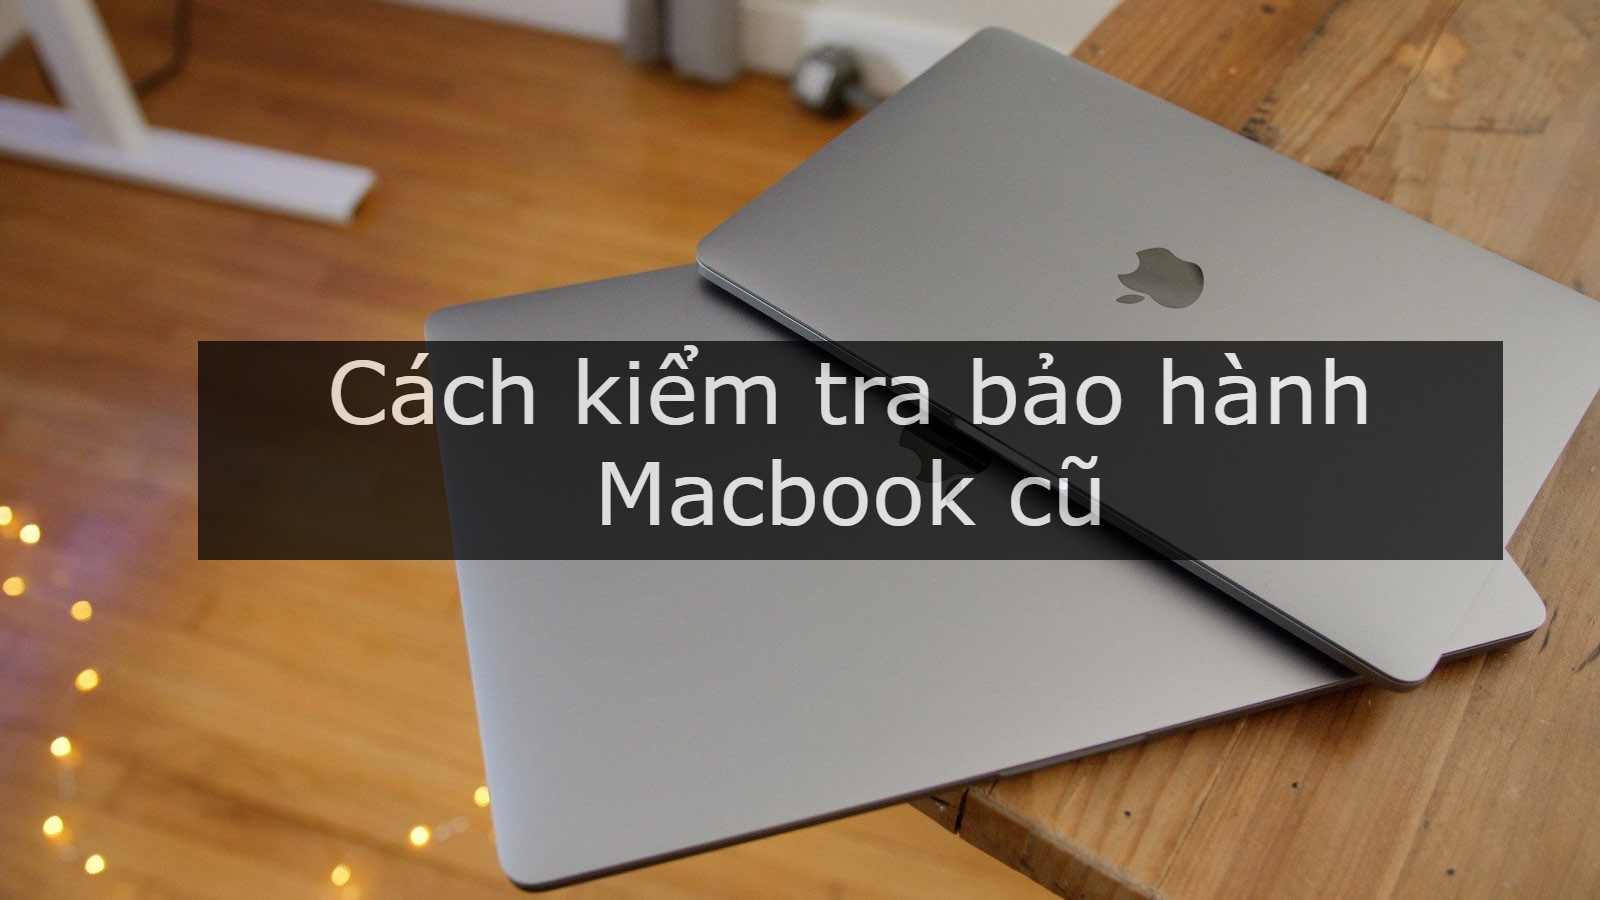 Hướng dẫn cách kiểm tra bảo hành Macbook ( Pro, Air, iMac )